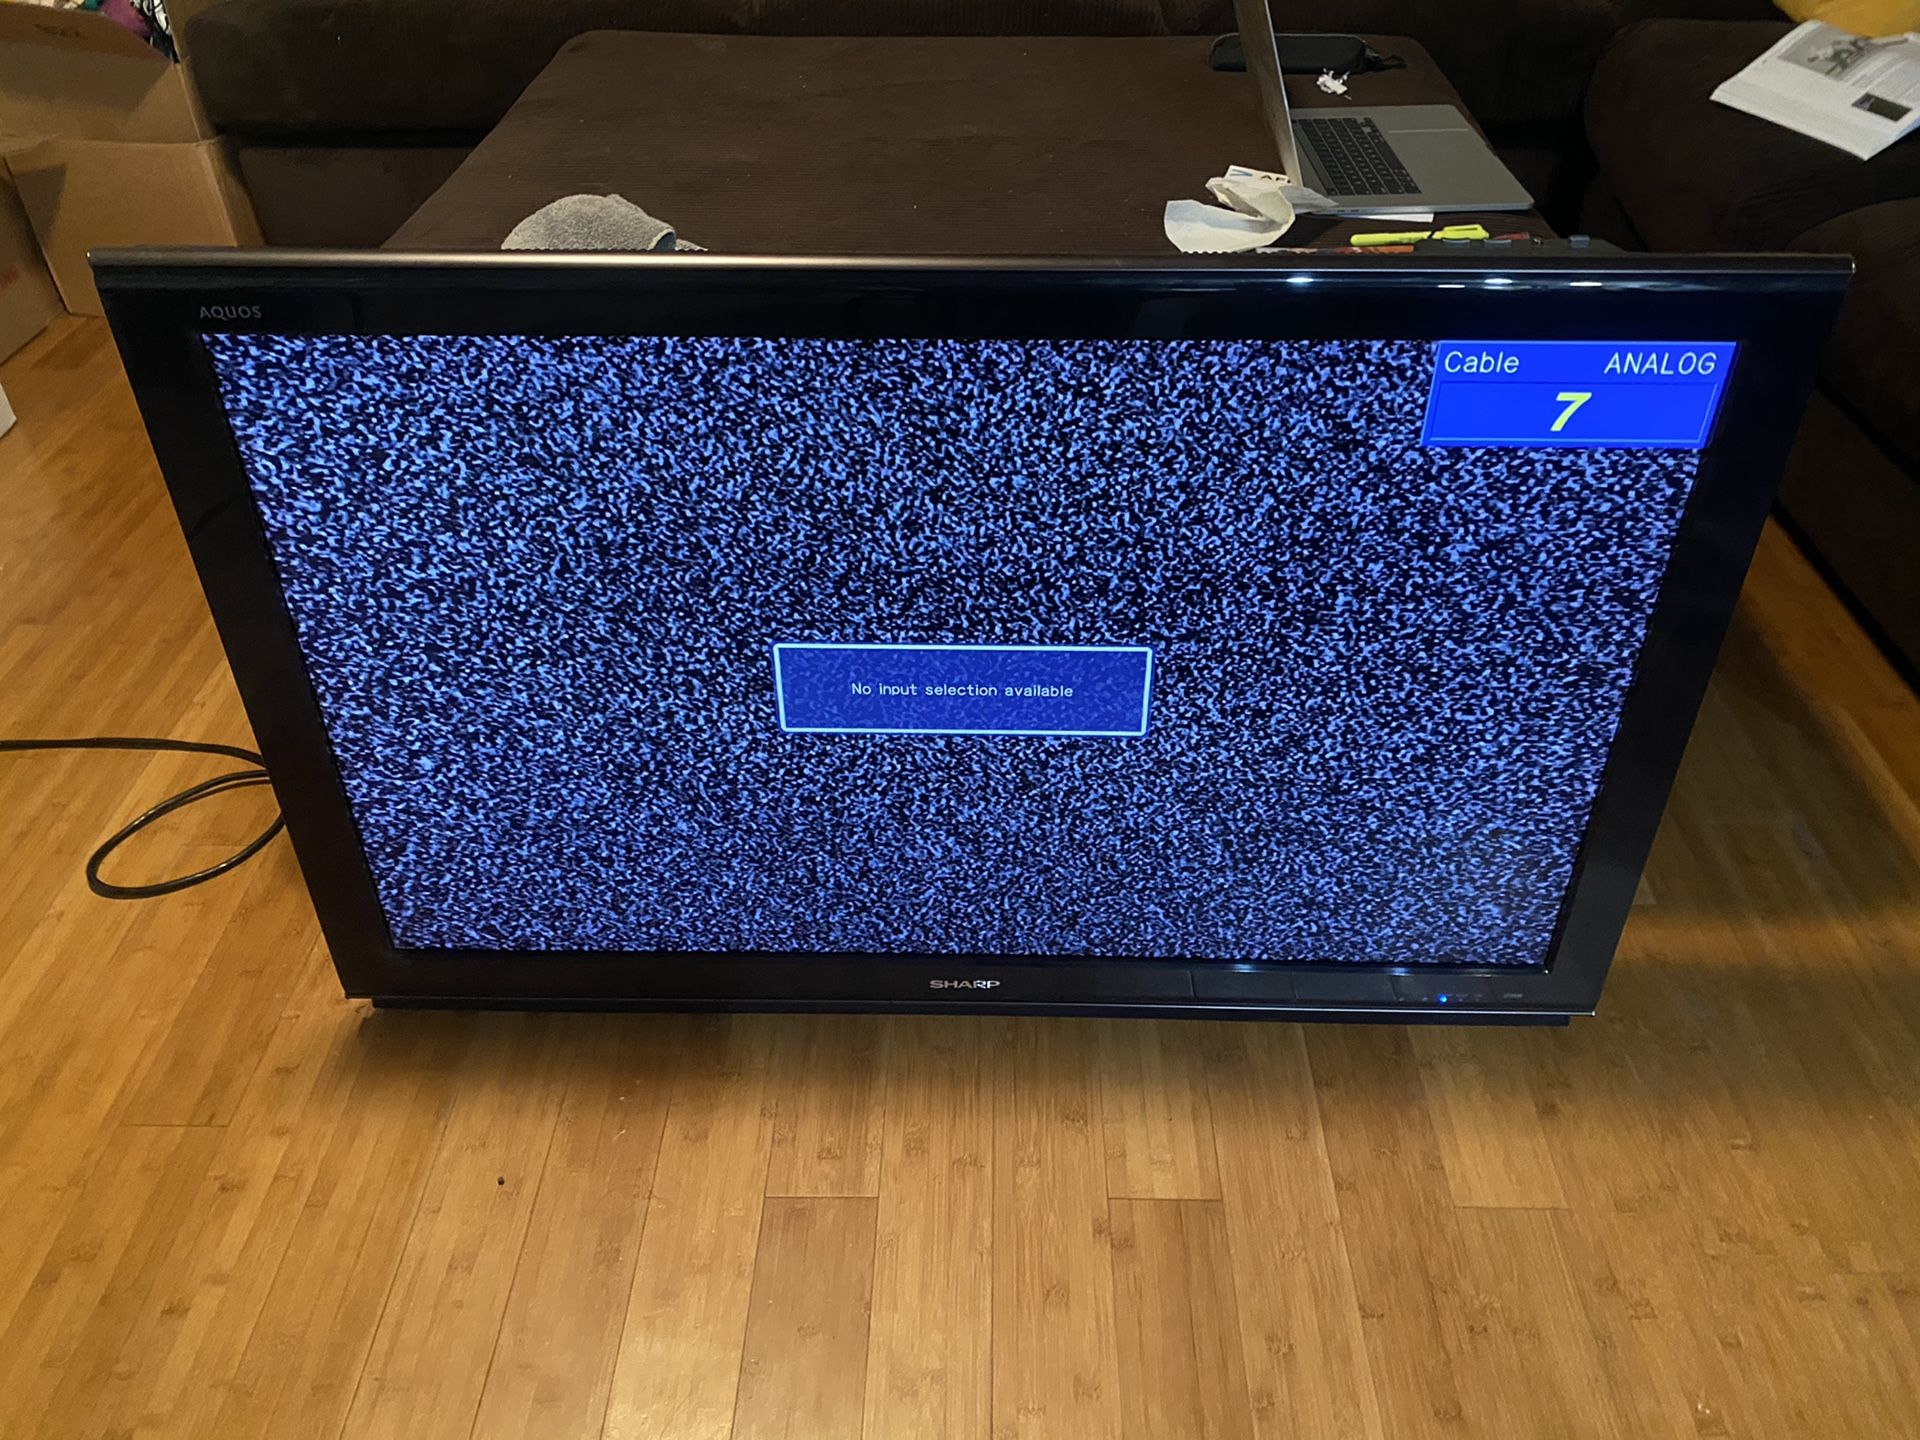 42”inch SHARP flat screen